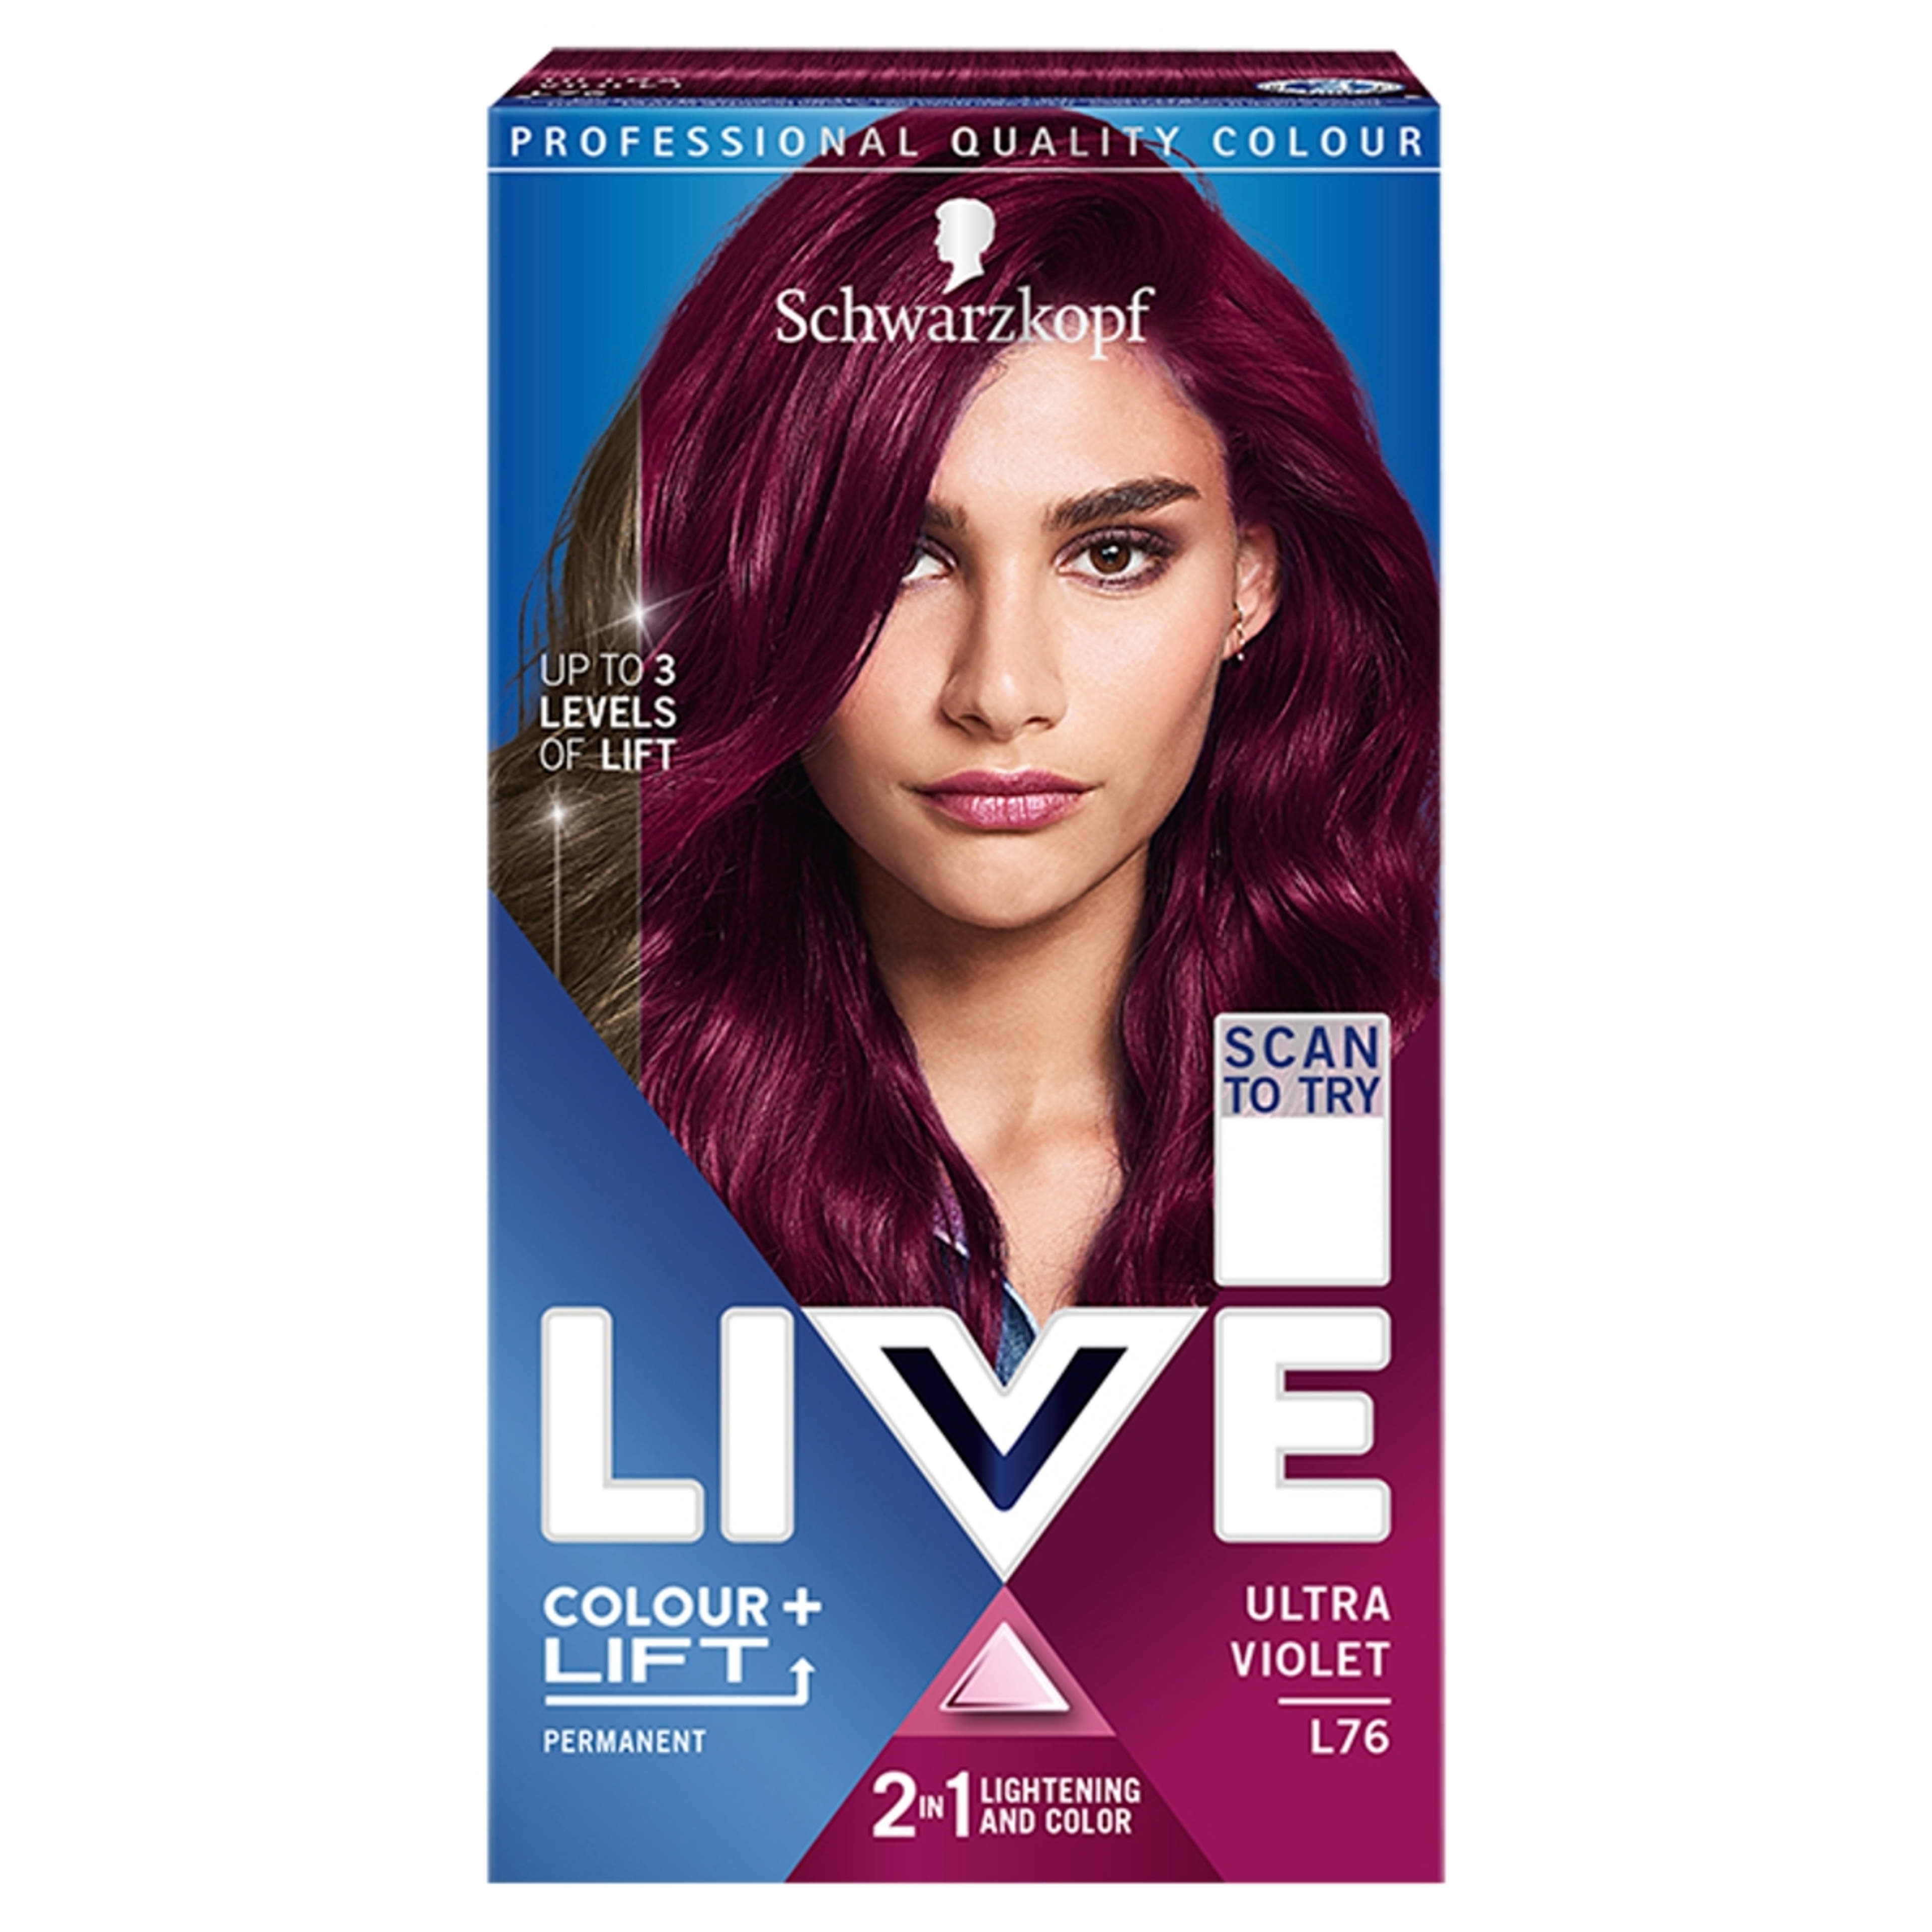 Color live lift+ l76 ultra violet - 1 db